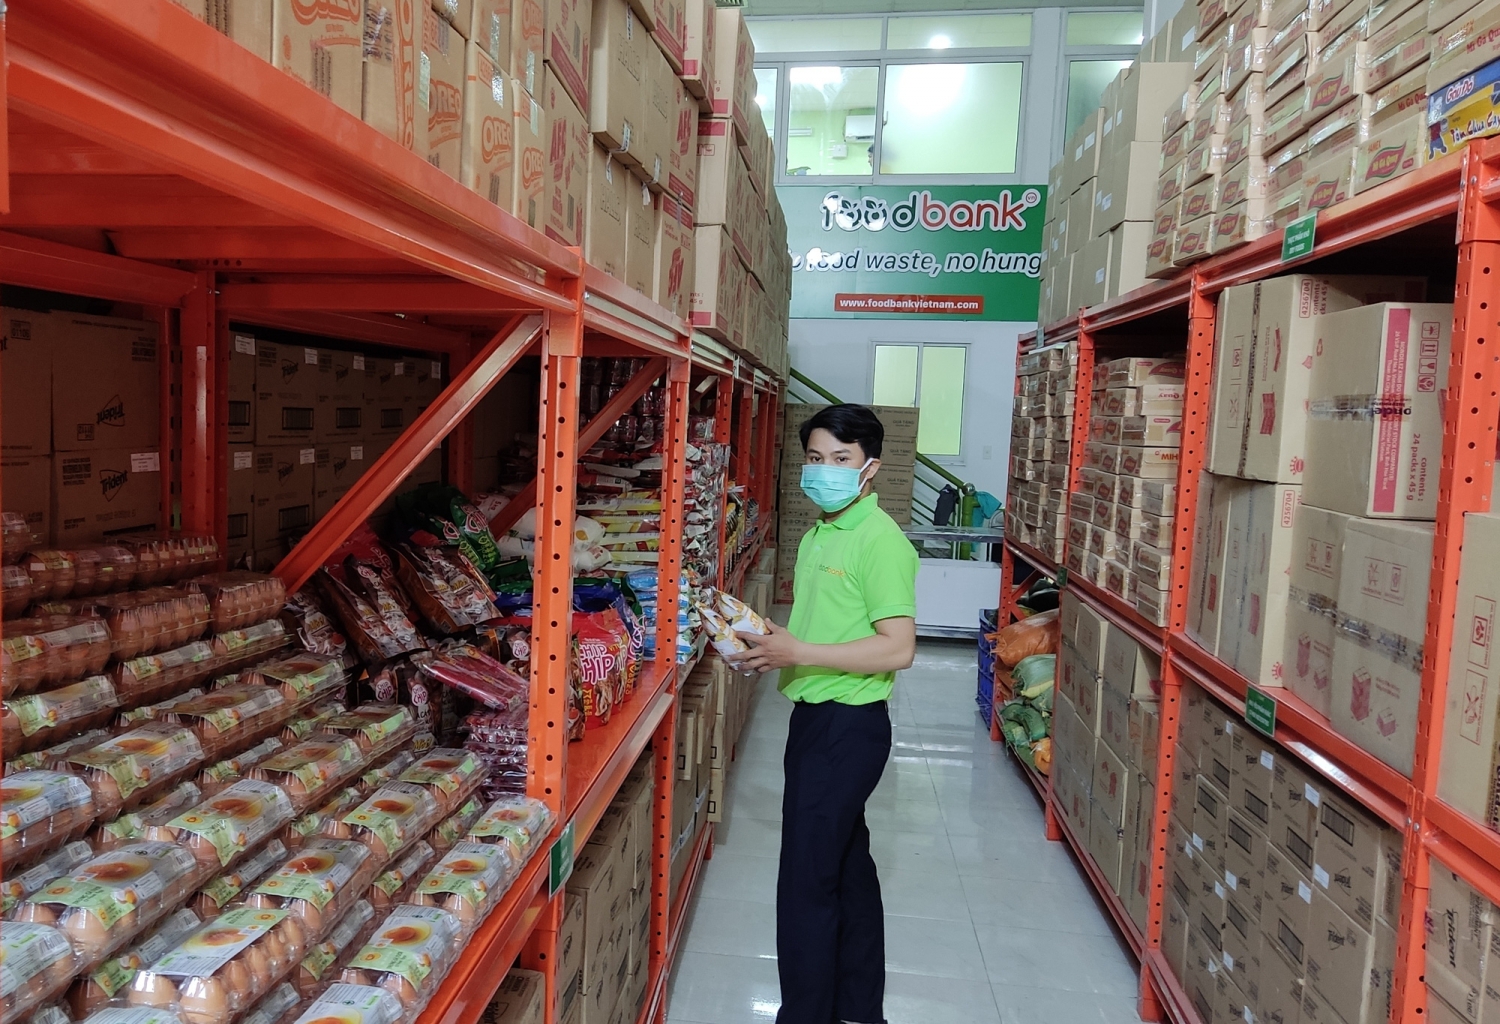 Kho lưu trữ thực phẩm phi lợi nhuận lần đầu xuất hiện tại Việt Nam